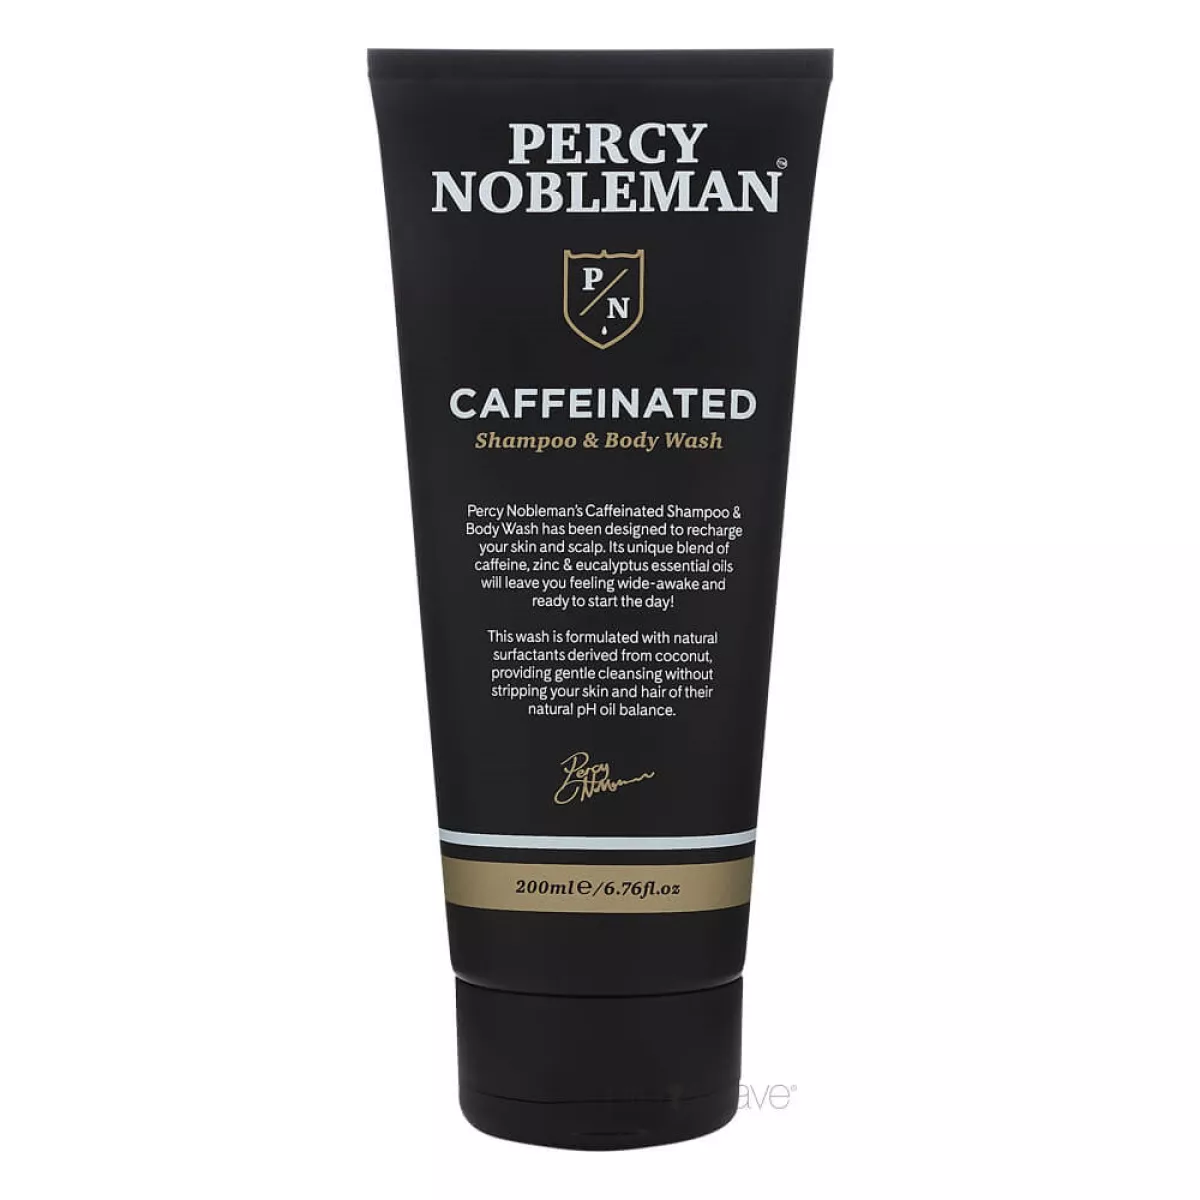 #2 - Percy Nobleman Caffeinated Shampoo & Body Wash, 200 ml.